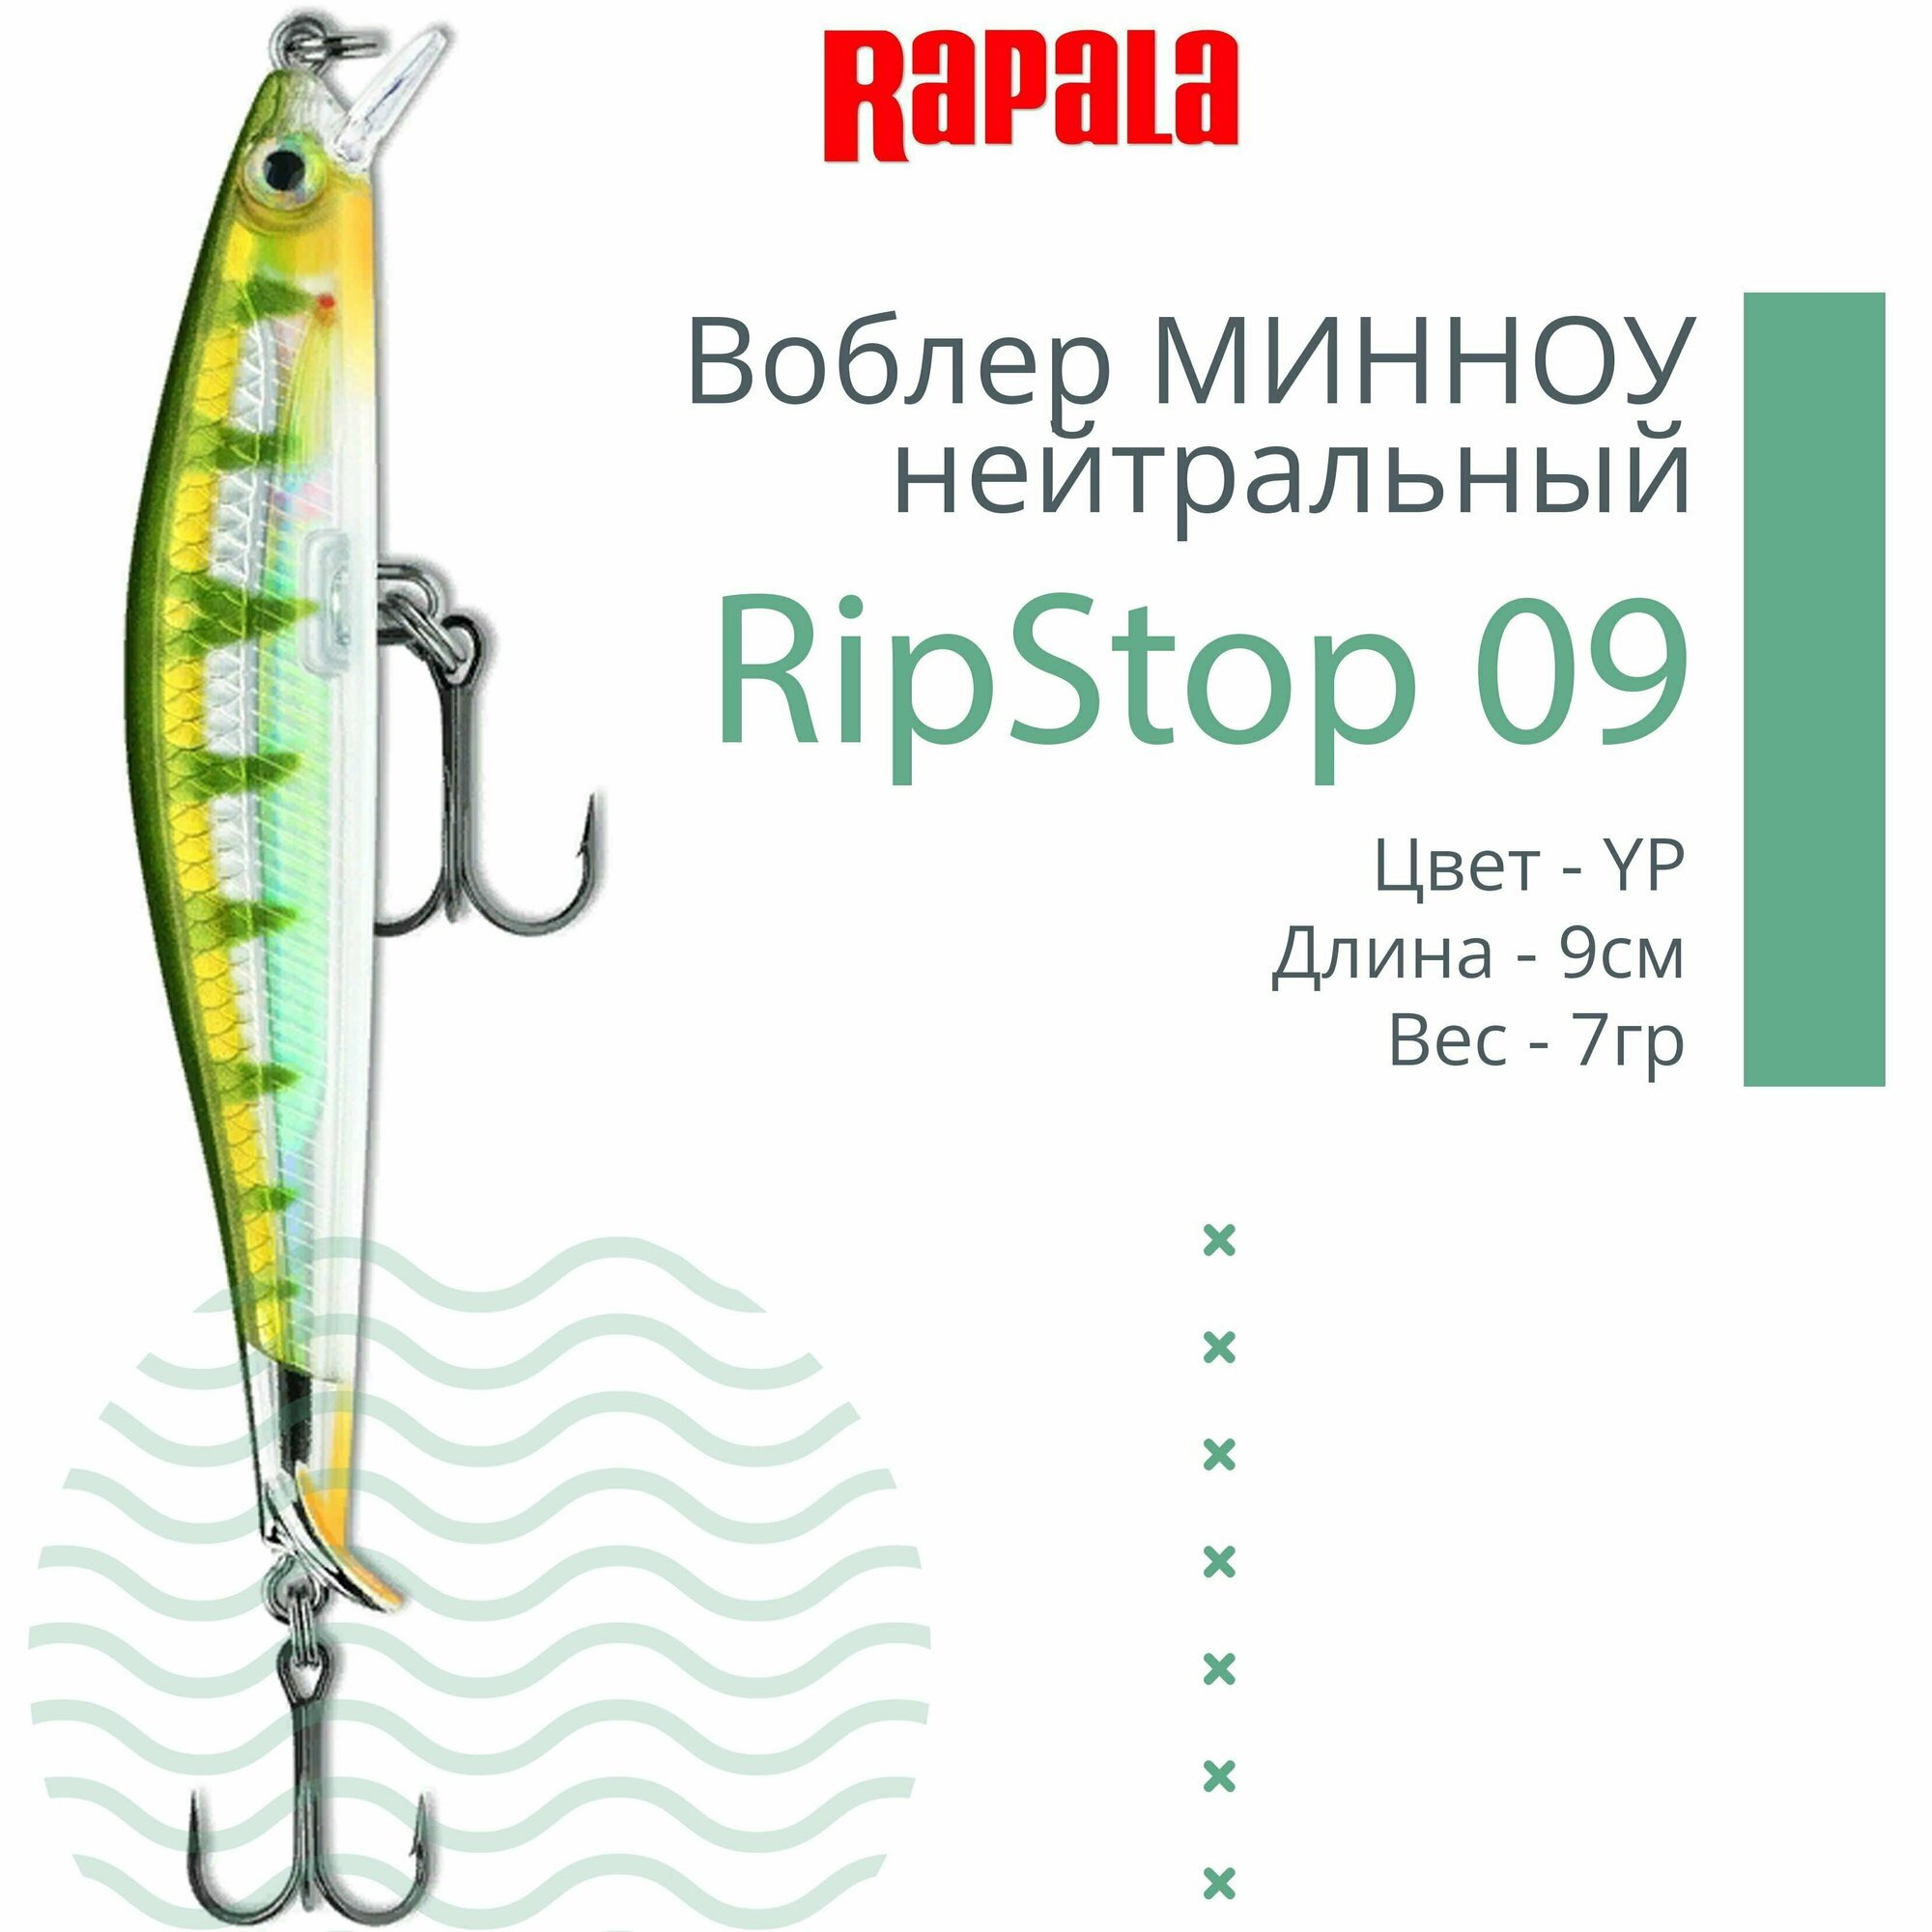 Воблер для рыбалки RAPALA RipStop 09, 9см, 7гр, цвет YP, нейтральный